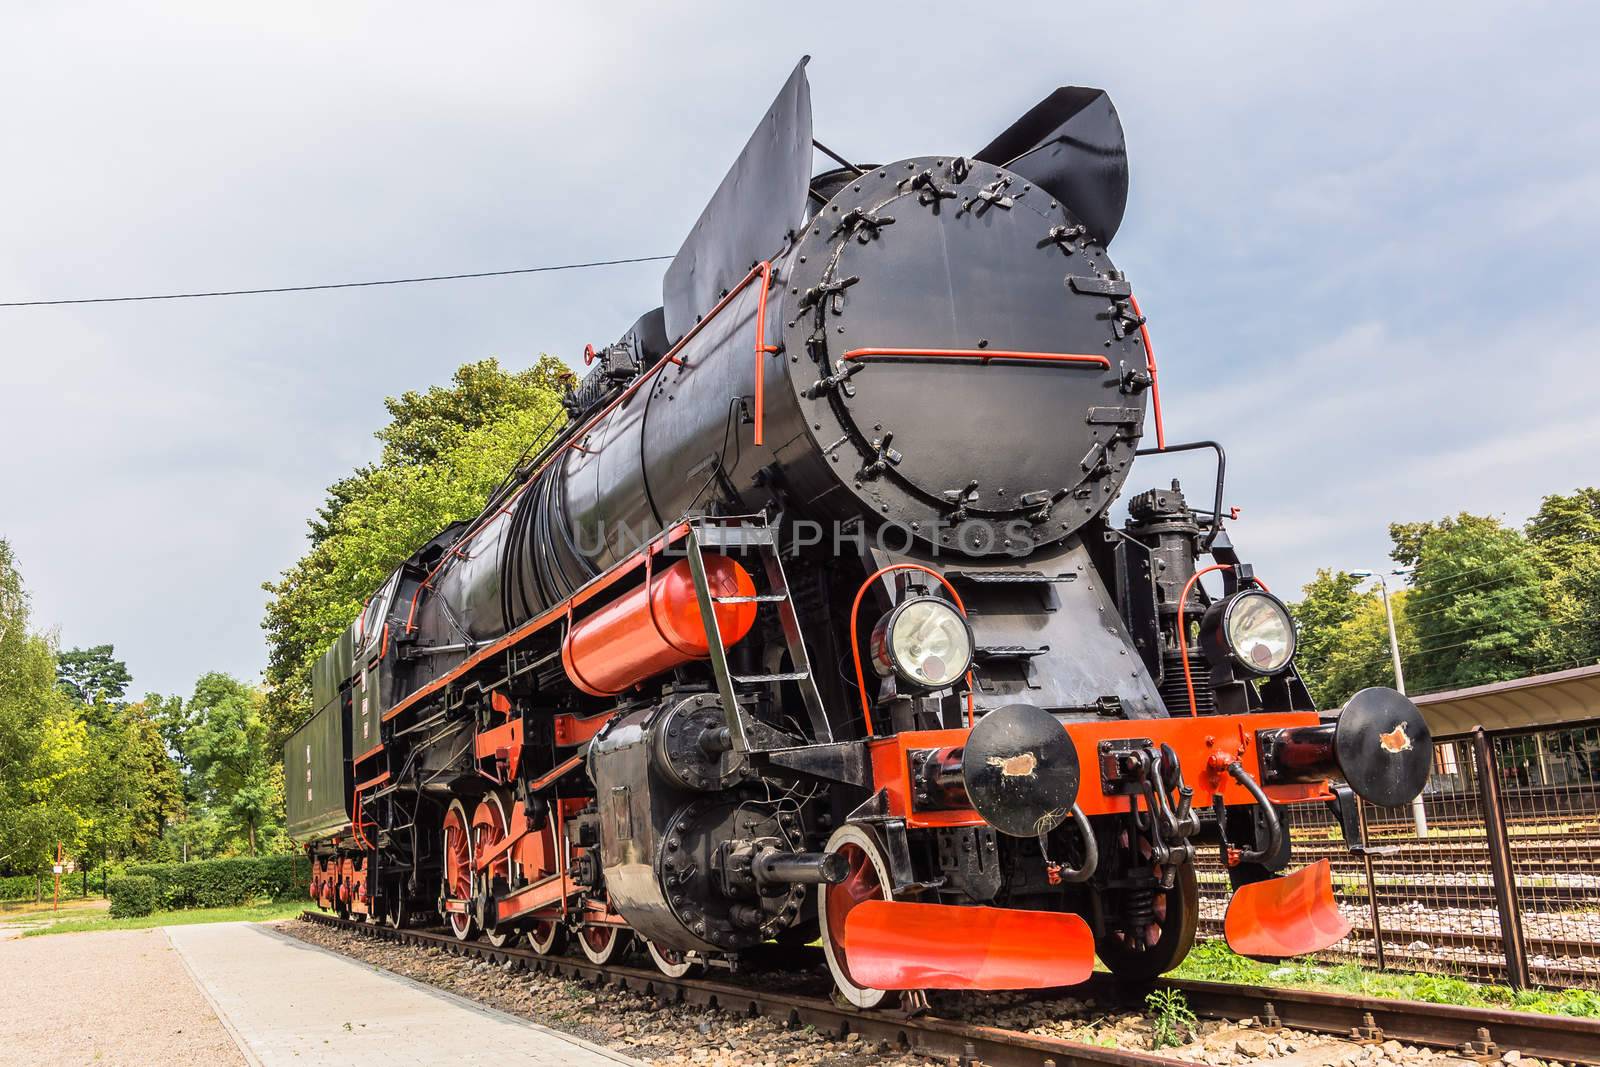 Old steam locomotive by pawel_szczepanski